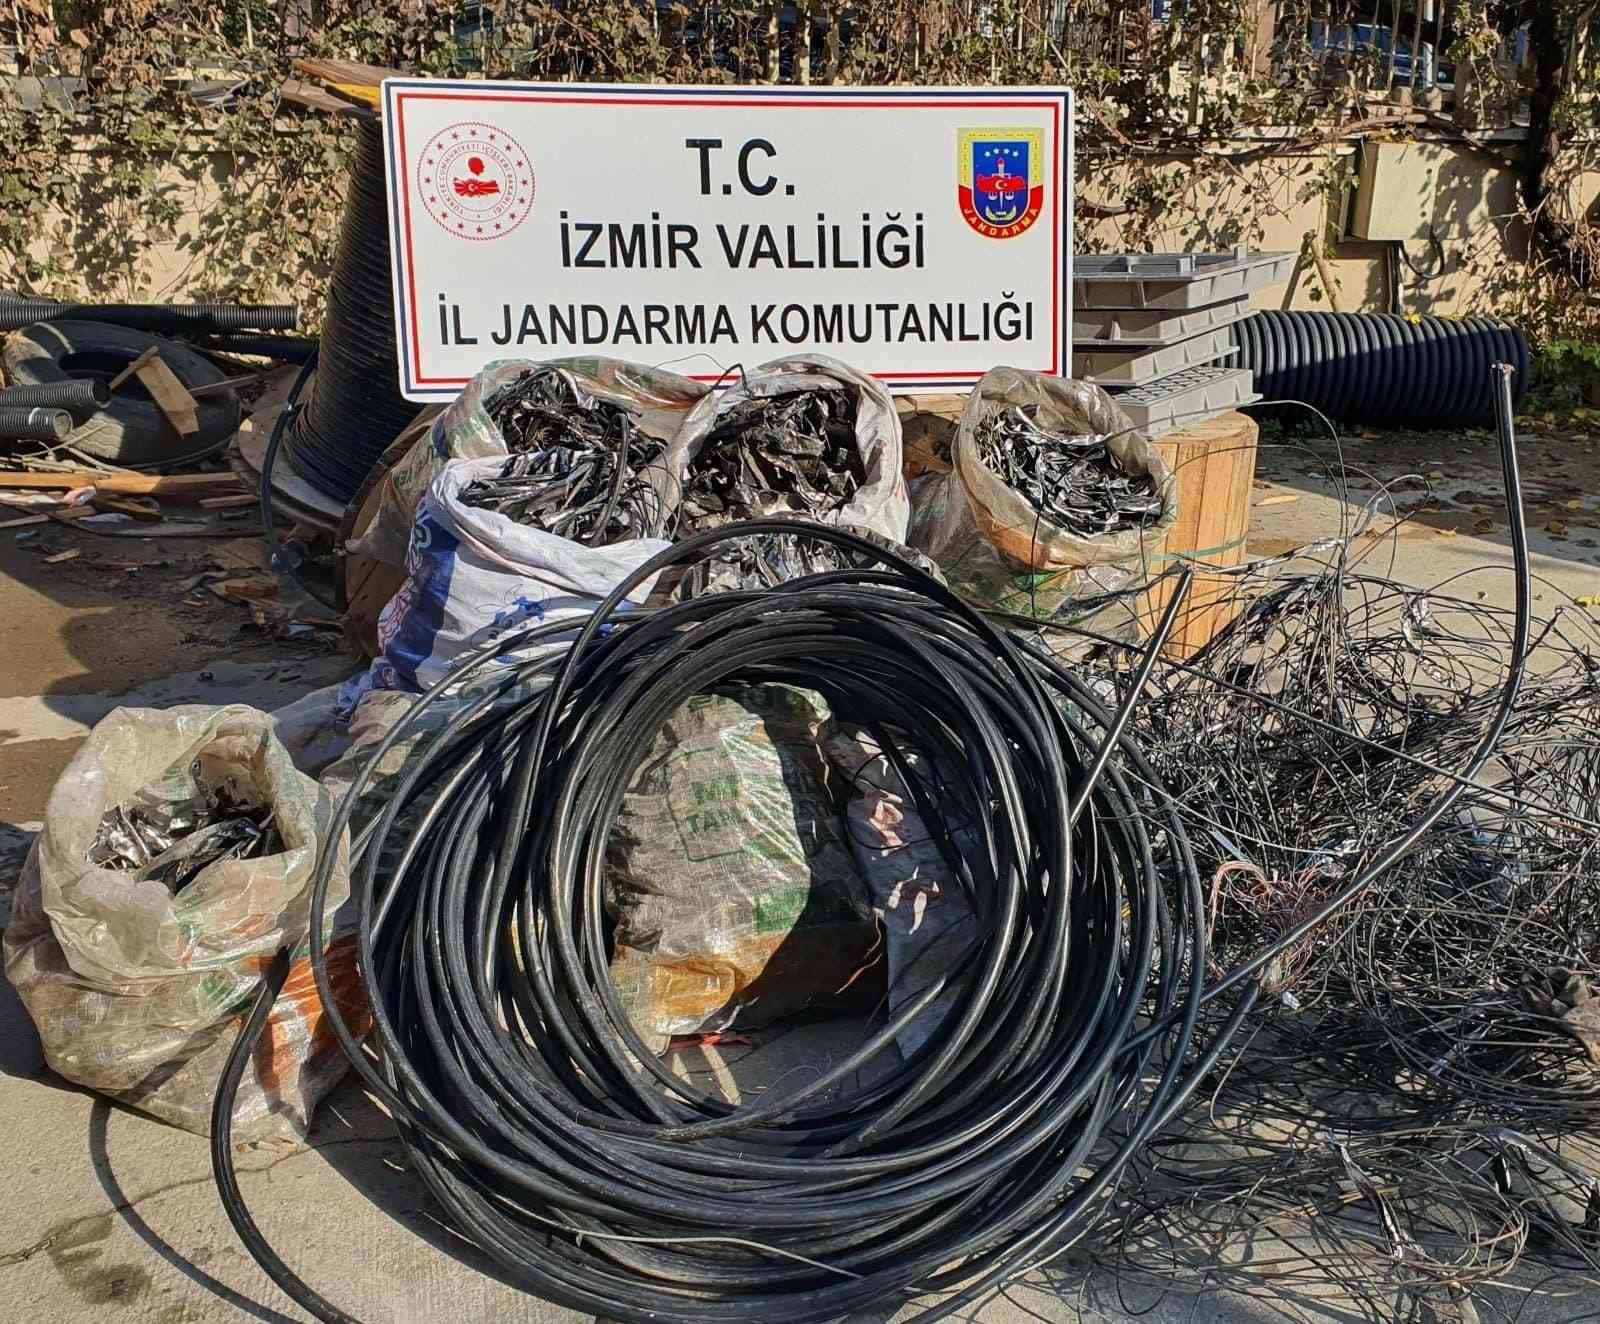 Kablo hırsızları suçüstü yakalandı #izmir